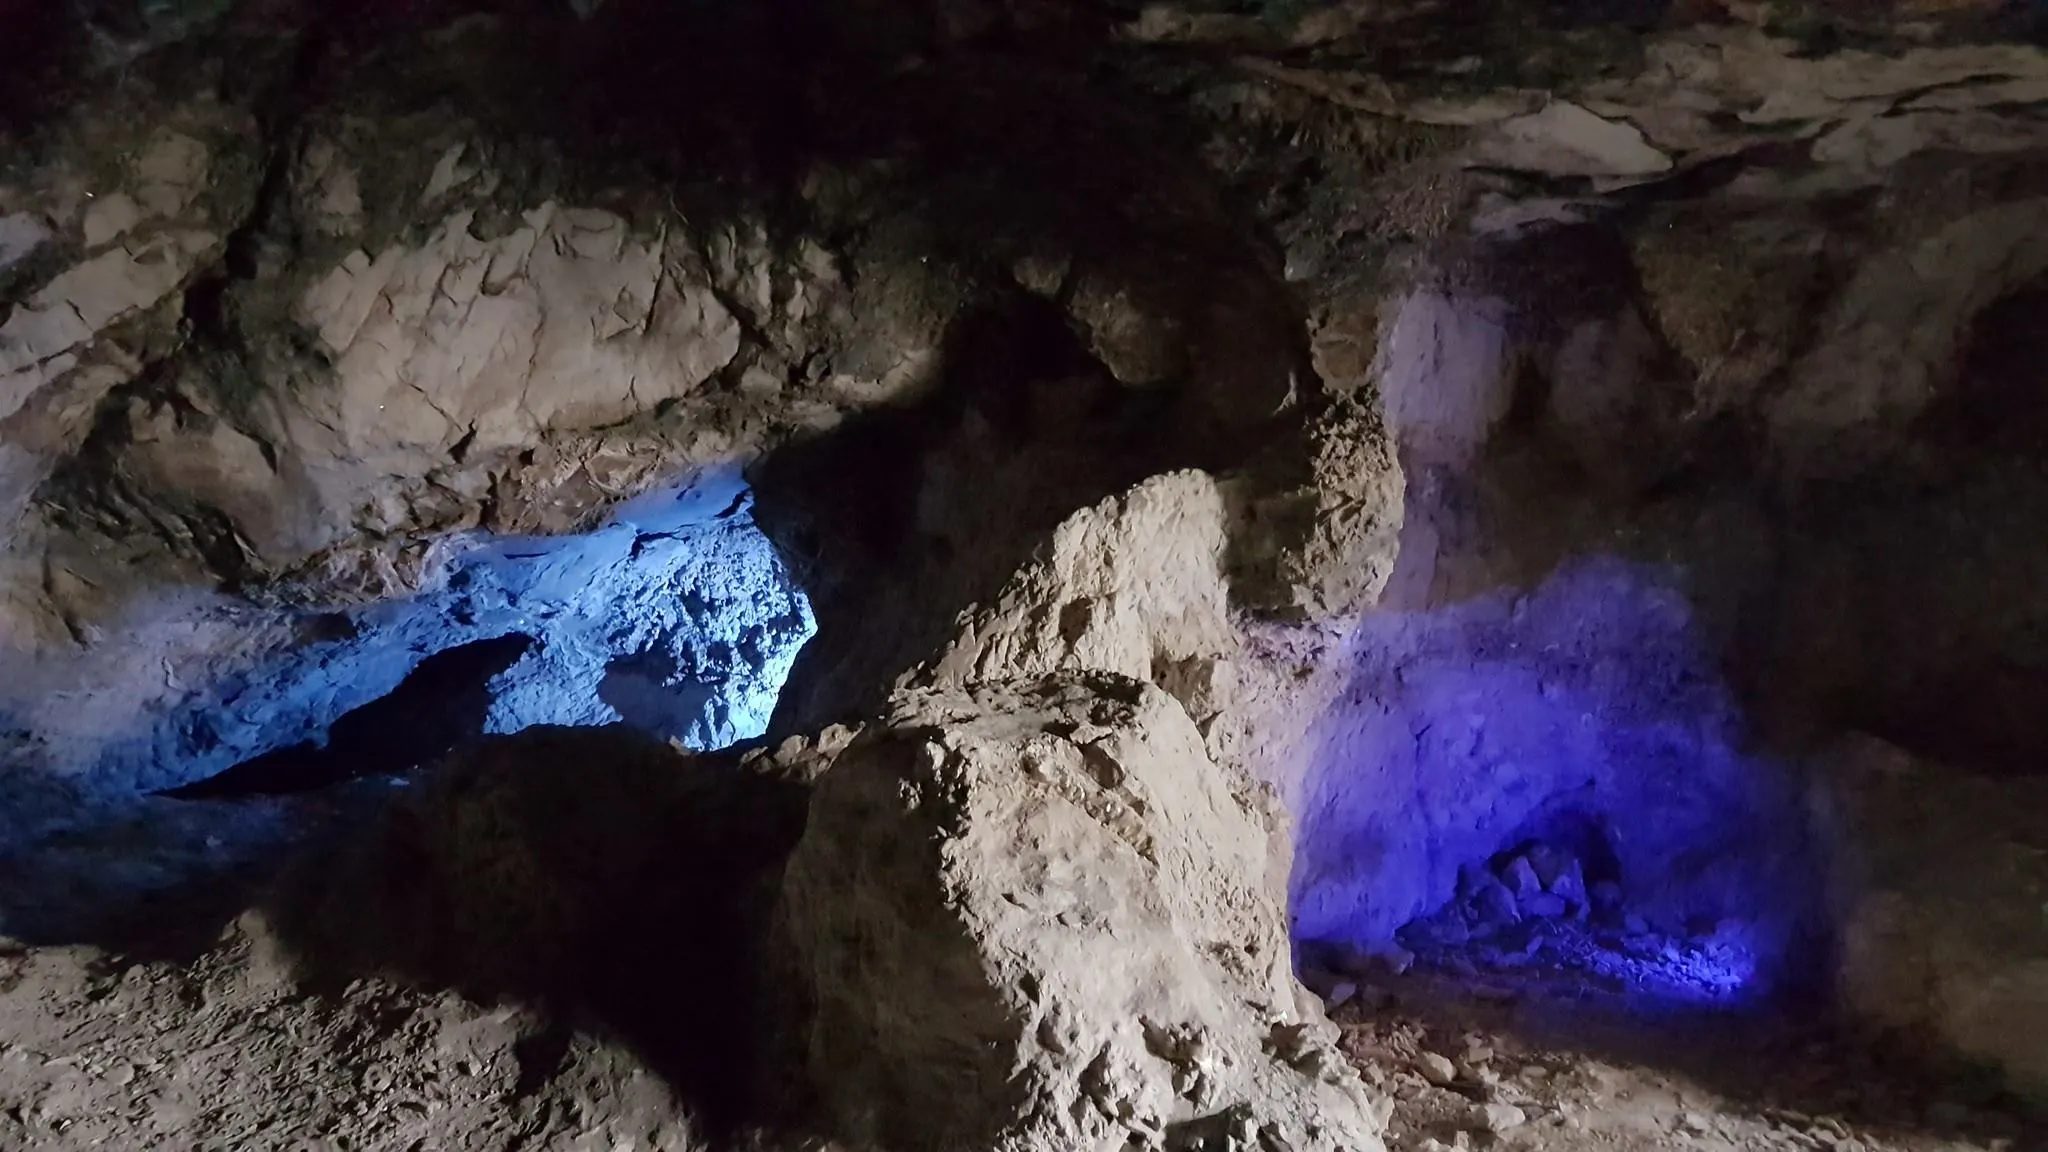 Photo showing: Fotografía de la mina de Los Cuchillos iluminada, en el complejo de Cuevas del Sabrio, Caracena, Huete